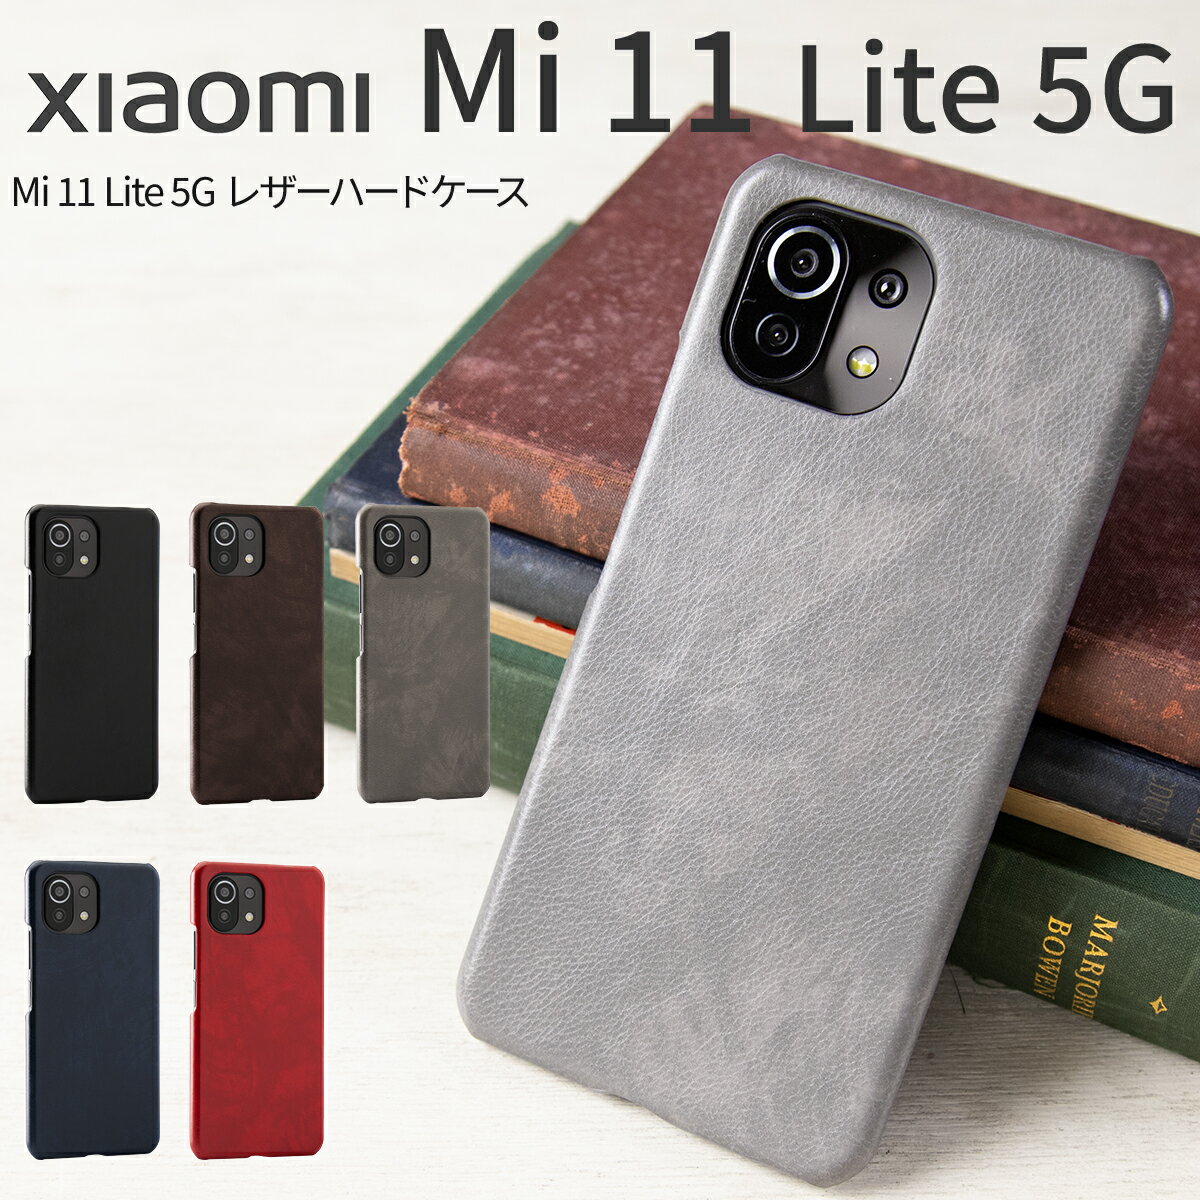  Mi 11 Lite 5G ケース シンプル スマホケース レザー カバー シャオミ Xiaomi 11 Lite 5G NE かっこいい おしゃれ 人気 革ハードケース 携帯ケース 携帯カバー